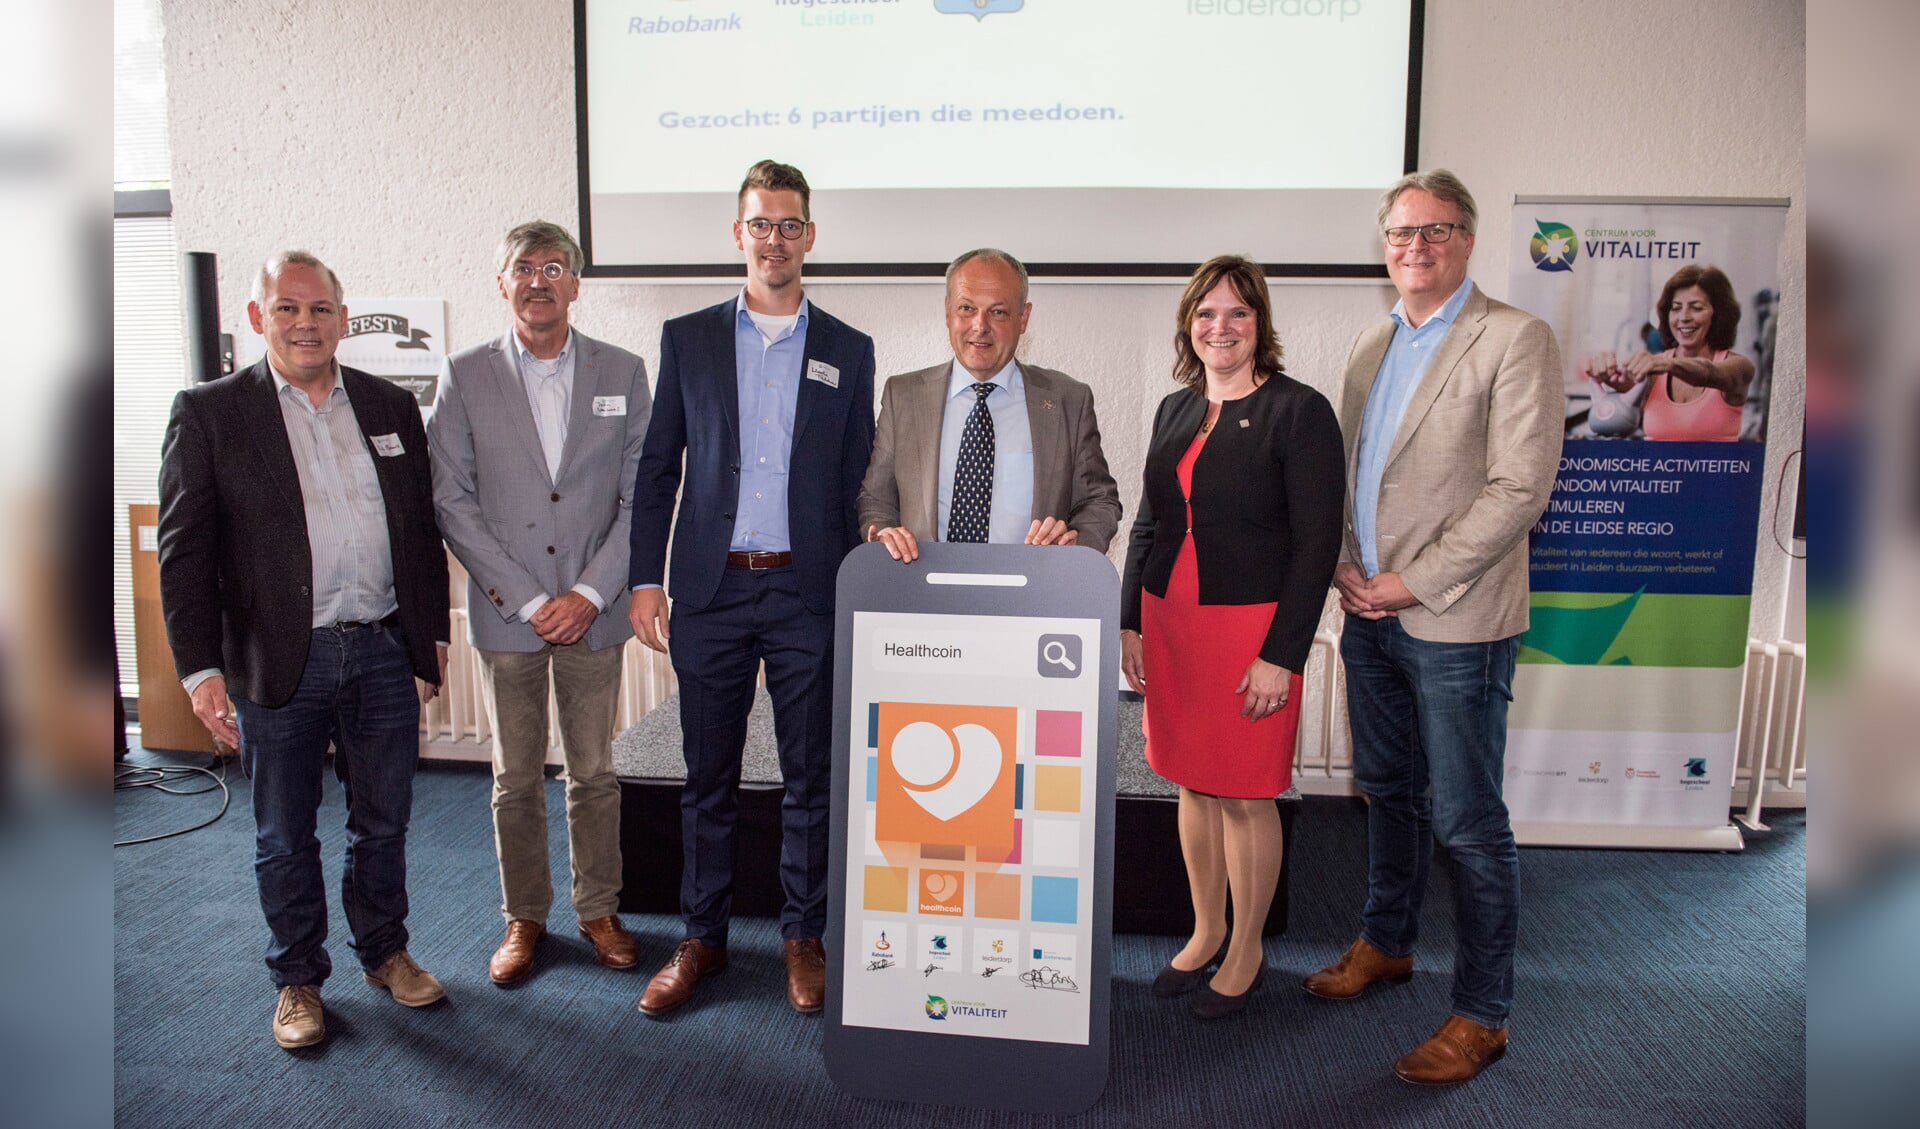 Burgemeester Henri Lenferink van Leiden (3e van rechts) lanceerde de app. Hij wordt geflankeerd door de eerste gebruikers. Onder hen is de gemeente Leiderdorp, hier vertegenwoordigd door wethouder Angelique Beekhuizen. 